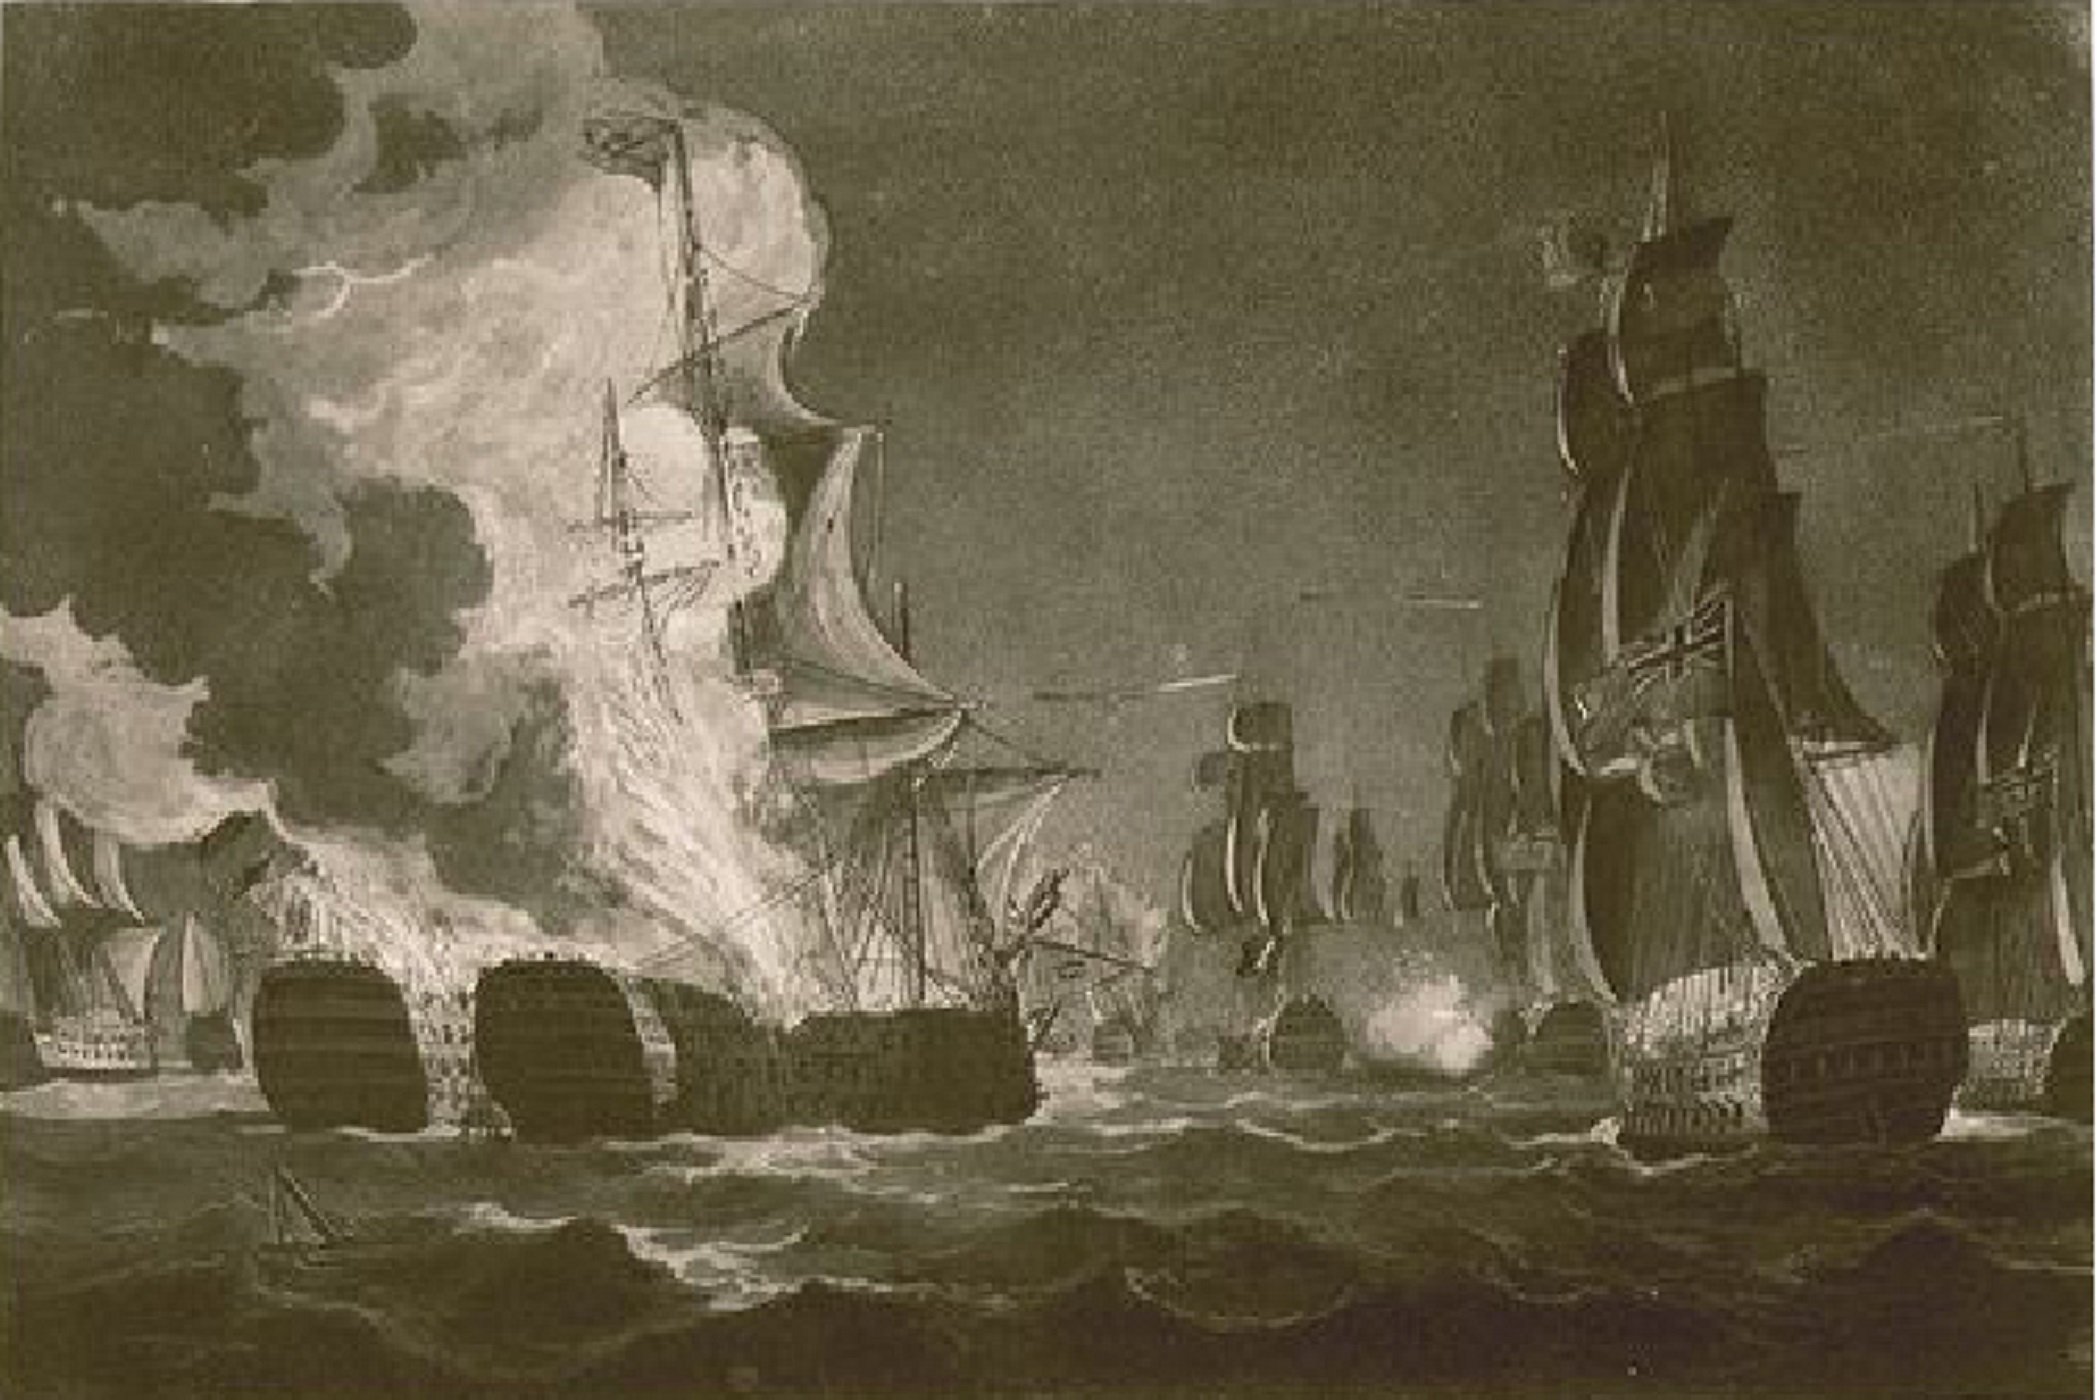 Las dos principales naves españolas se disparan y se destruyen mutuamente